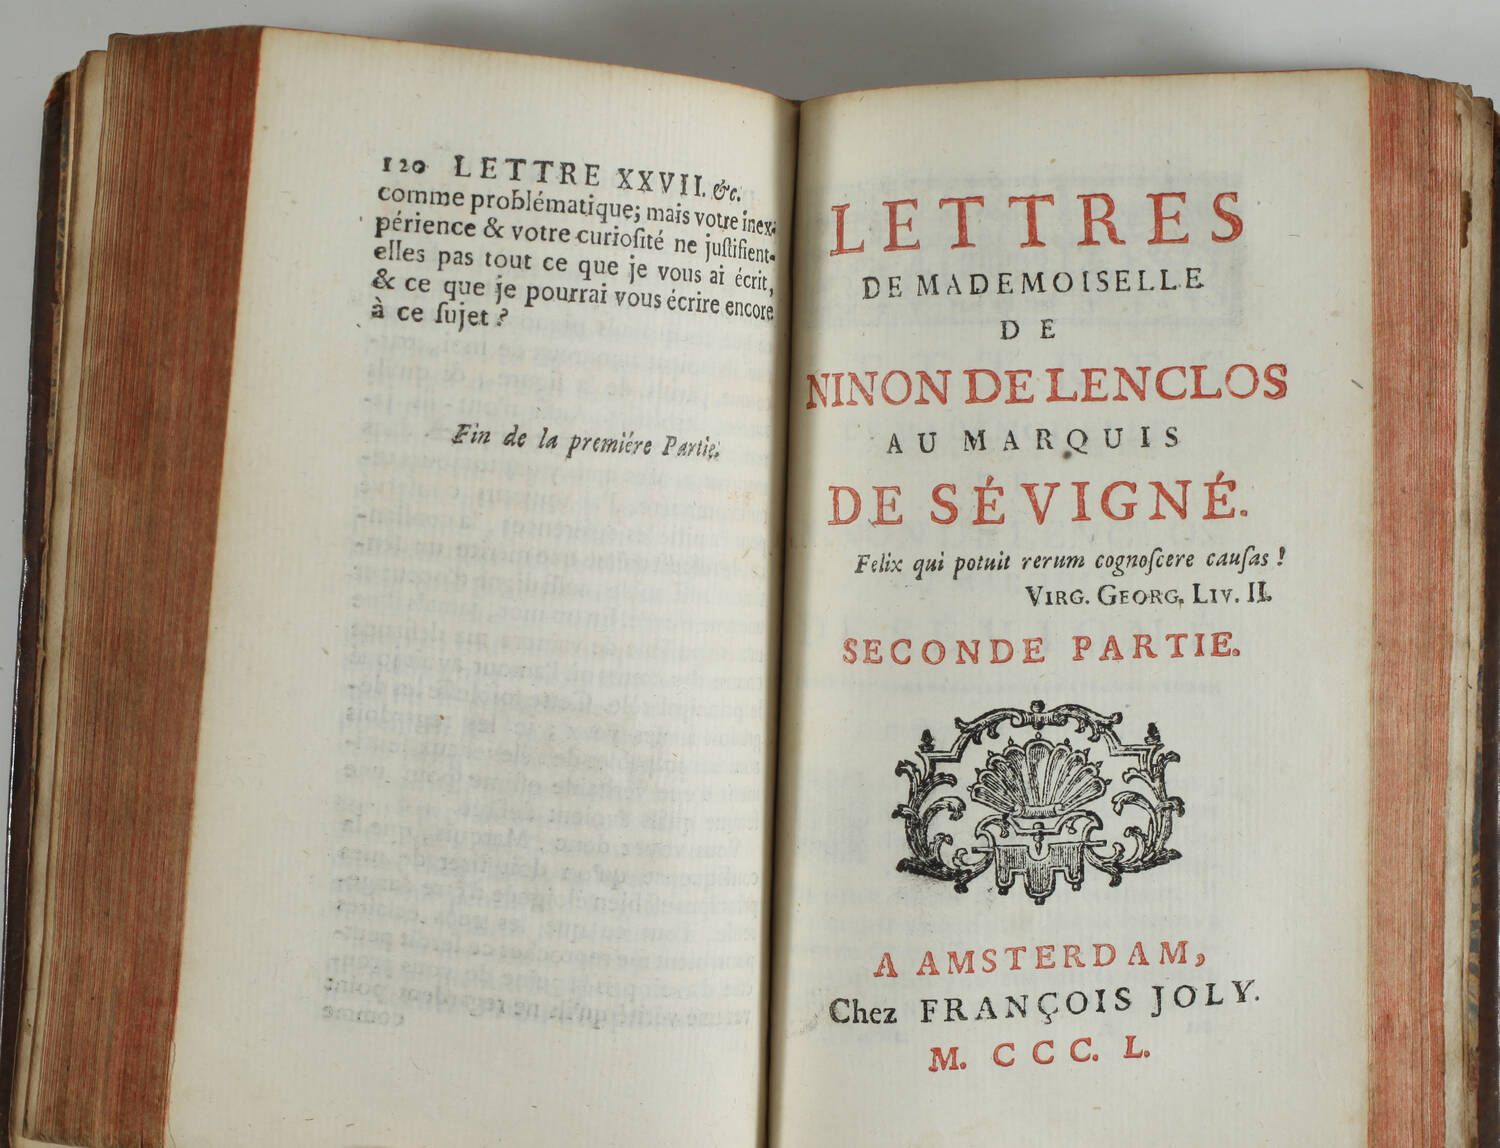 Mémoires sur la vie de Ninon de Lenclos par M. Bret - 1751 et 1750 - Photo 3, livre ancien du XVIIIe siècle